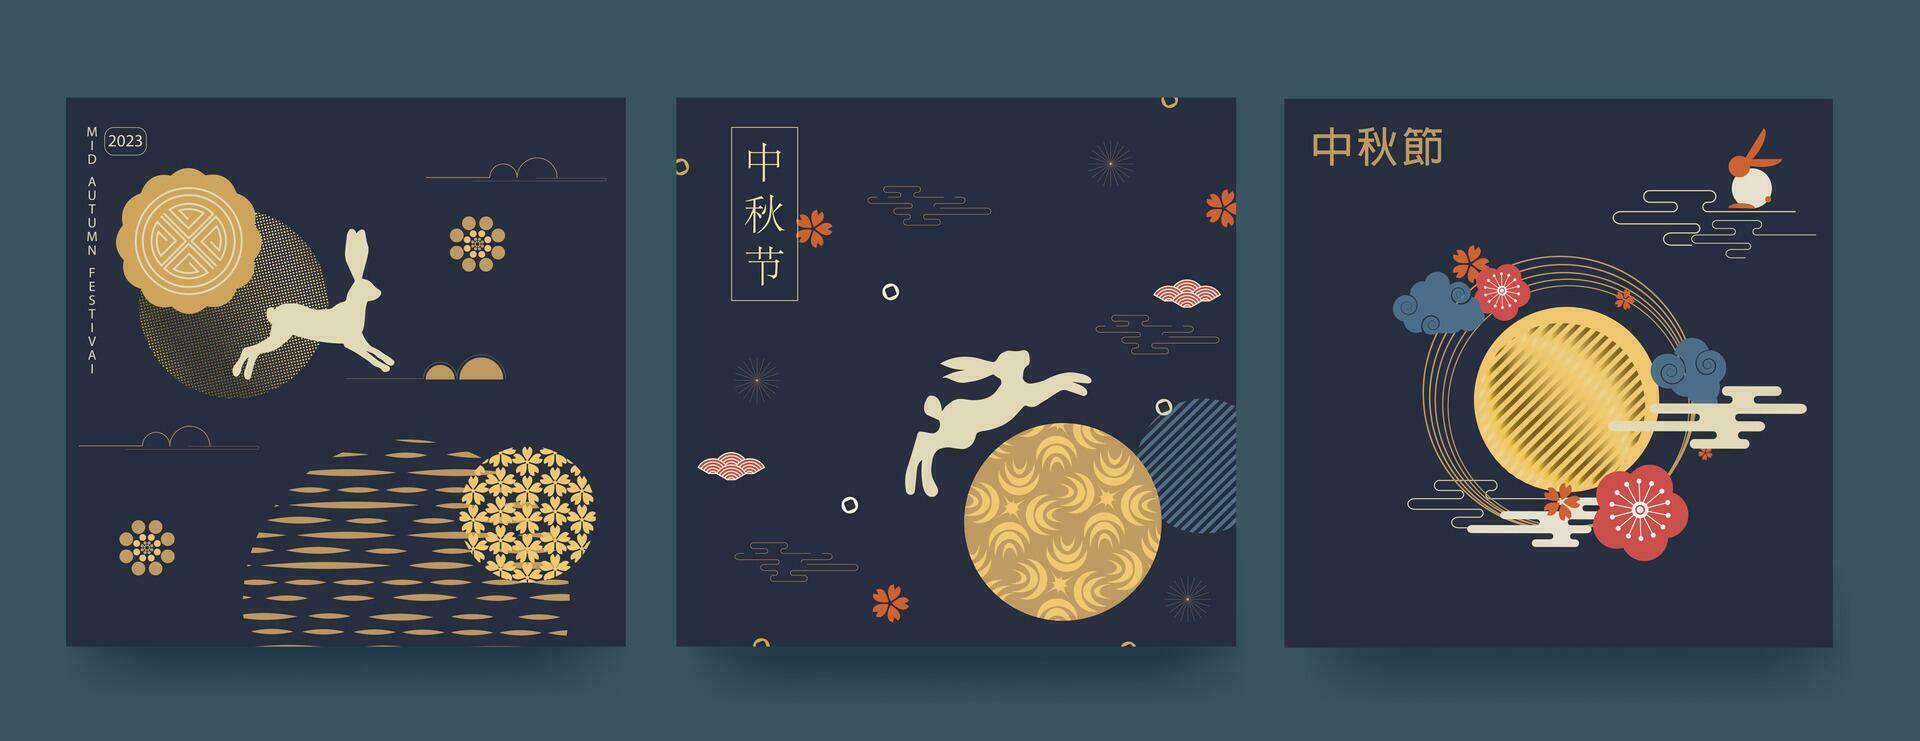 mitten höst festival minimalistisk stil affisch uppsättning, hälsning kort, bakgrund. översättning från kinesisk mitt under hösten. vektor illustration